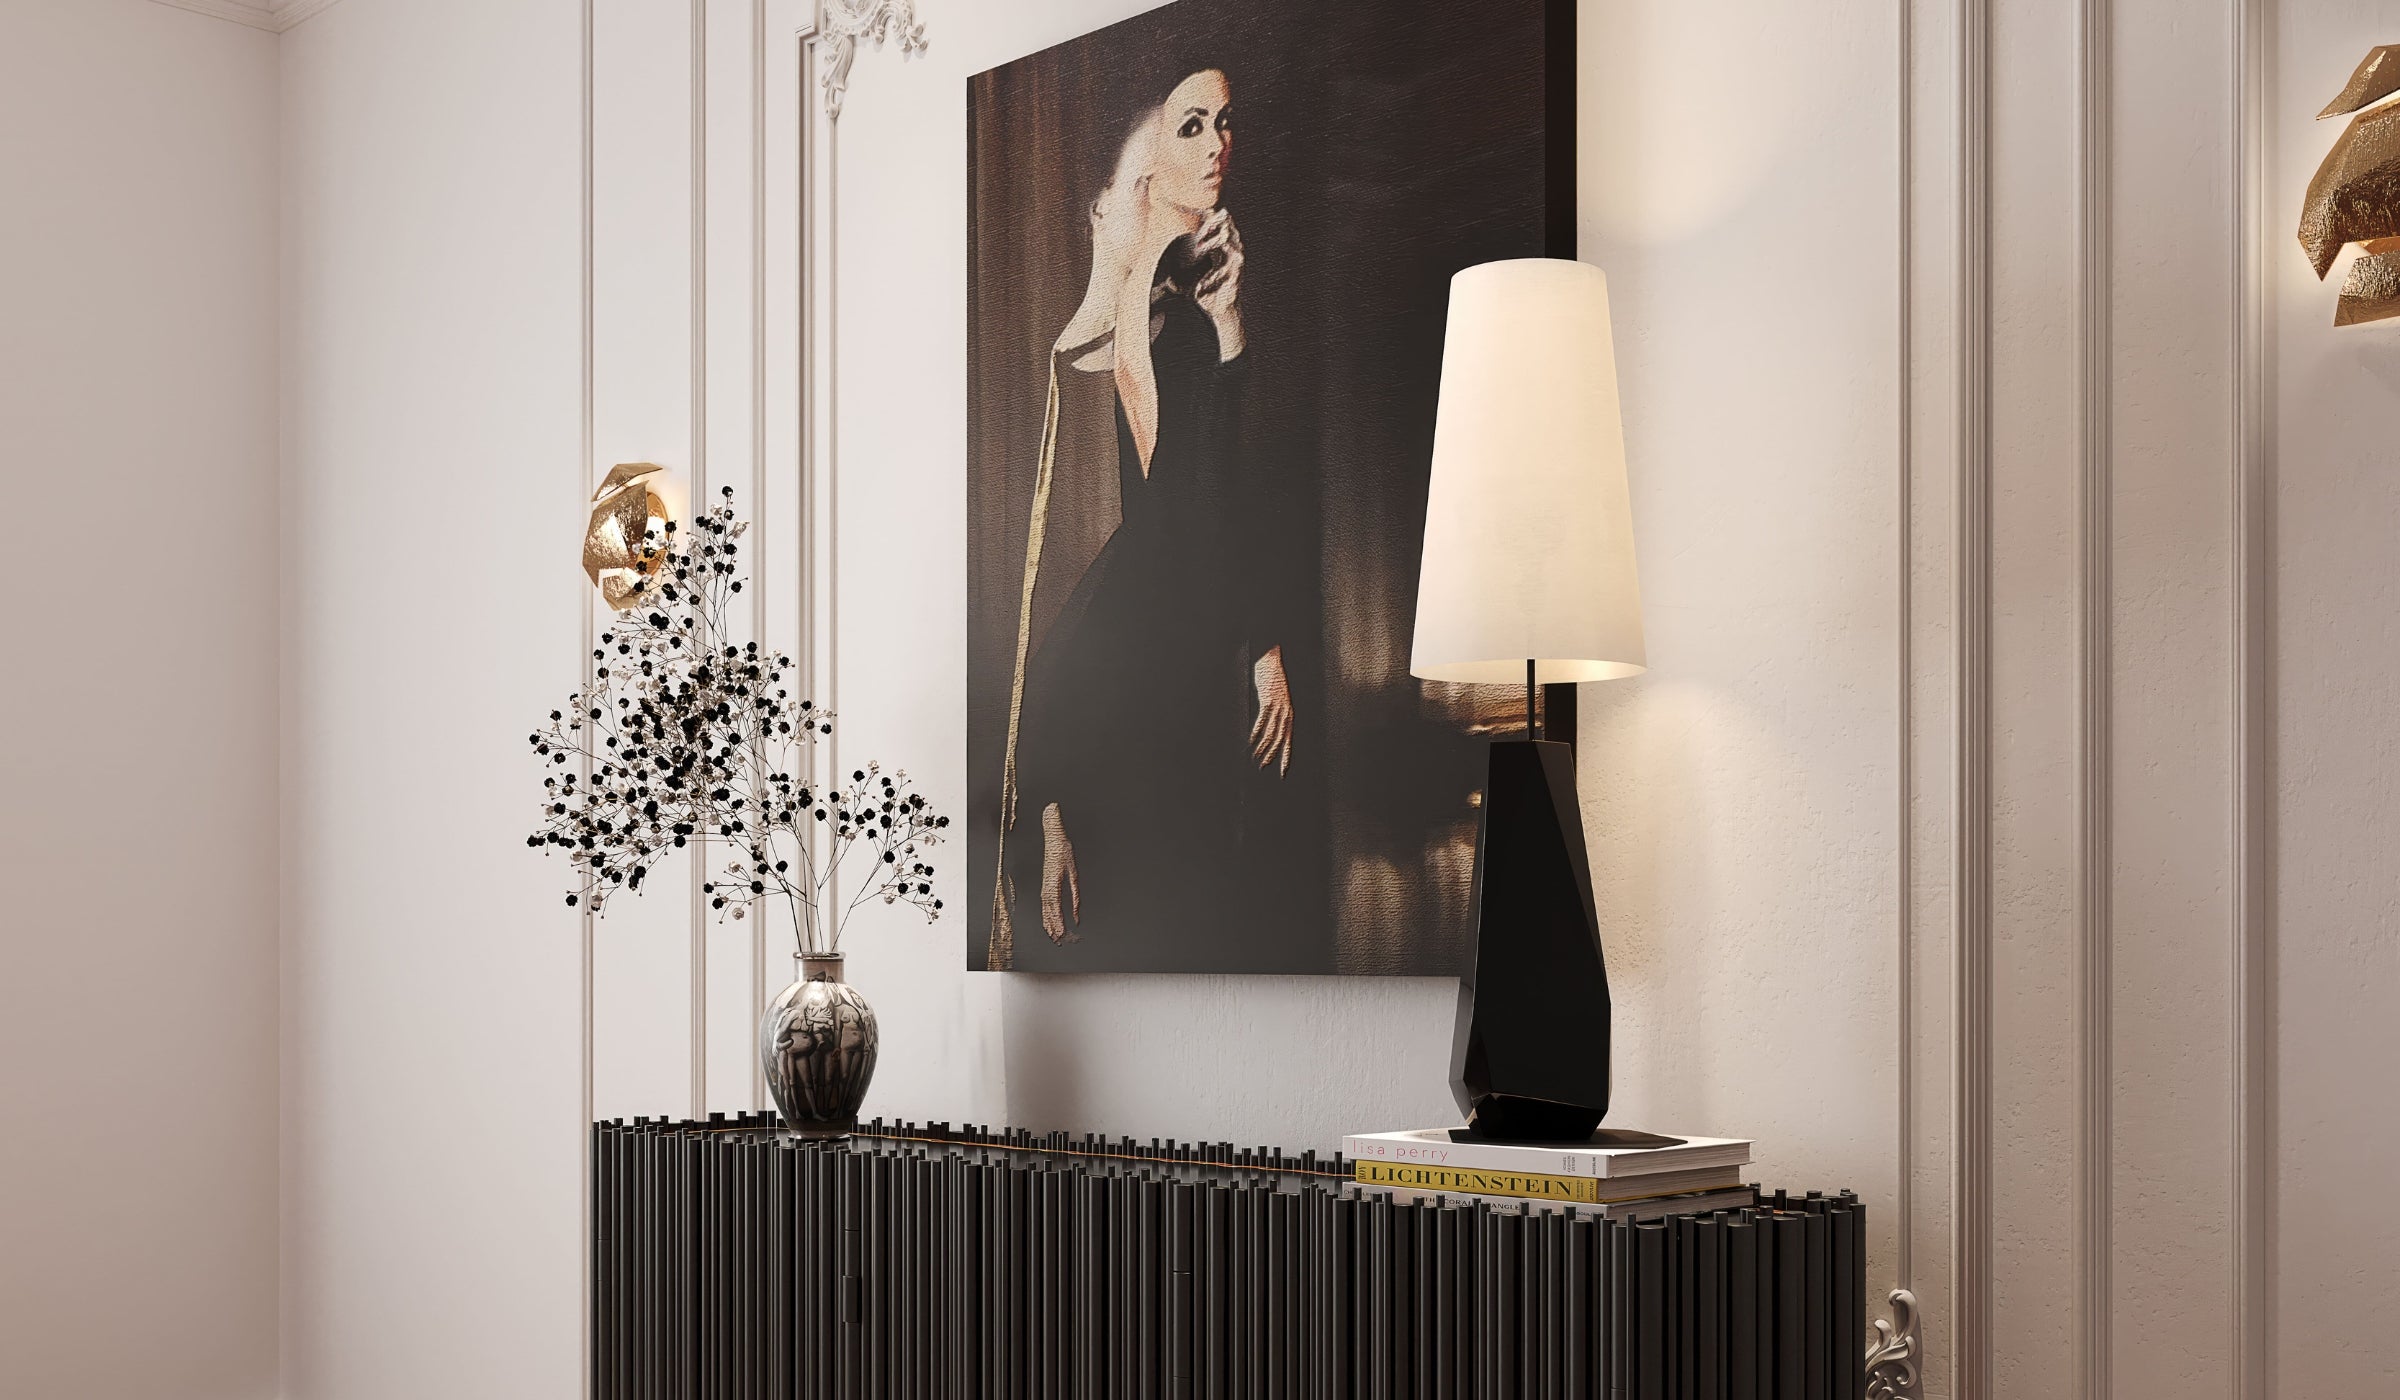 Feel Big - Lampe de table noire, éclairage design en fibre de verre, feuilles d'argent, acier inoxydable et soie